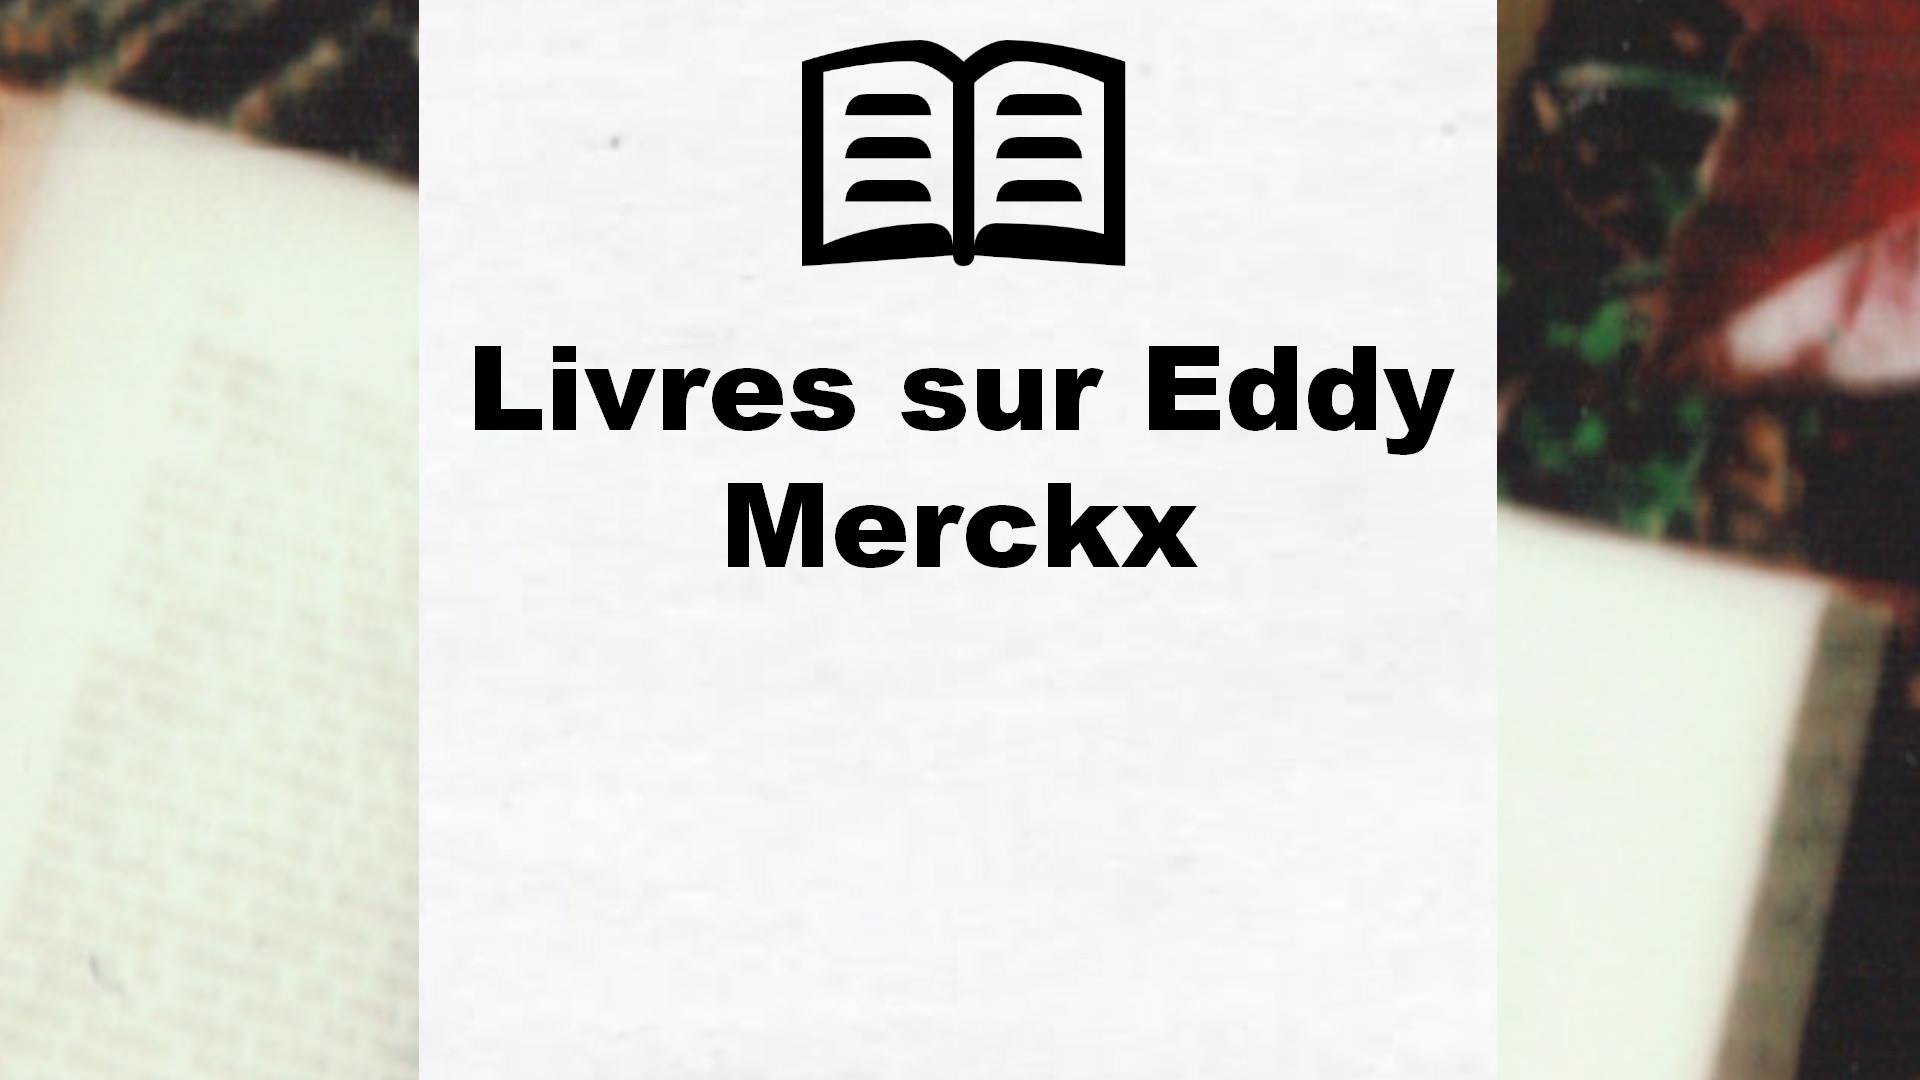 Livres sur Eddy Merckx